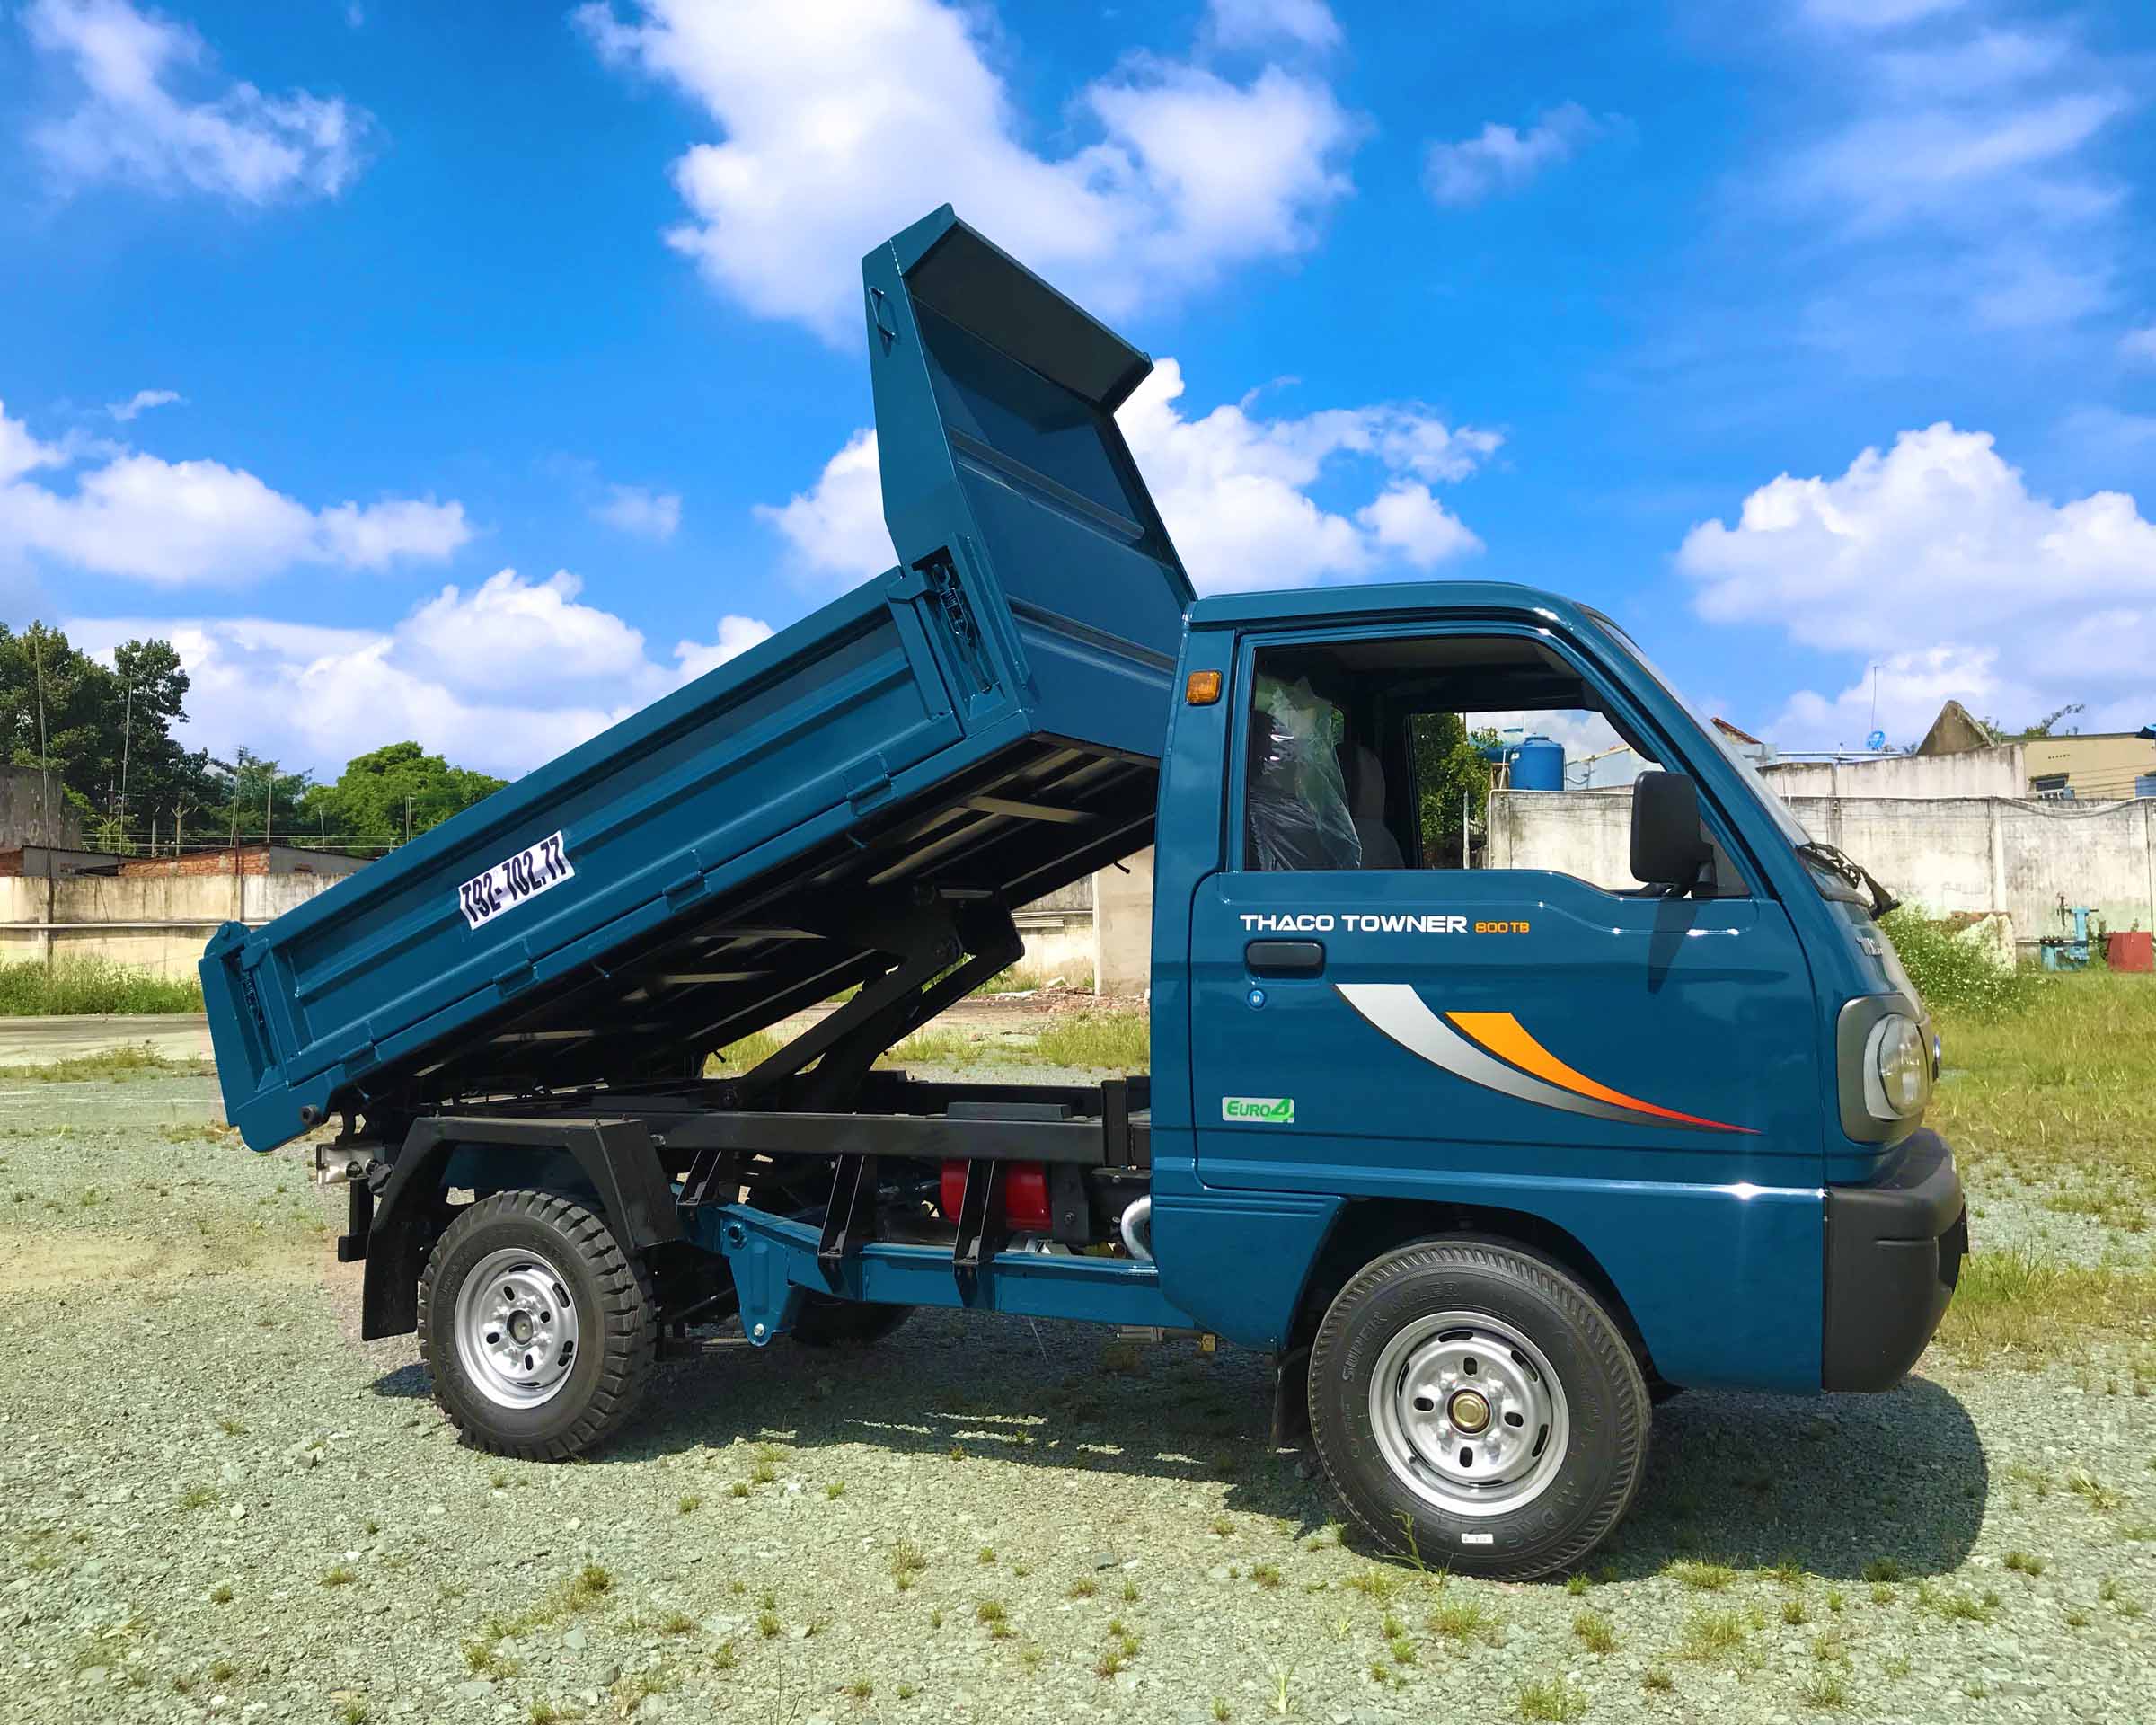 Xe tải nhẹ 650kg xe tải thaco towner 750A 750kg xe tải nhẹ 600kg xe tải  nhẹ 750kg máy suzuki  giá xe tải nhẹ 950kg  Nguyễn Minh Đạt  MBN126587   0369980619